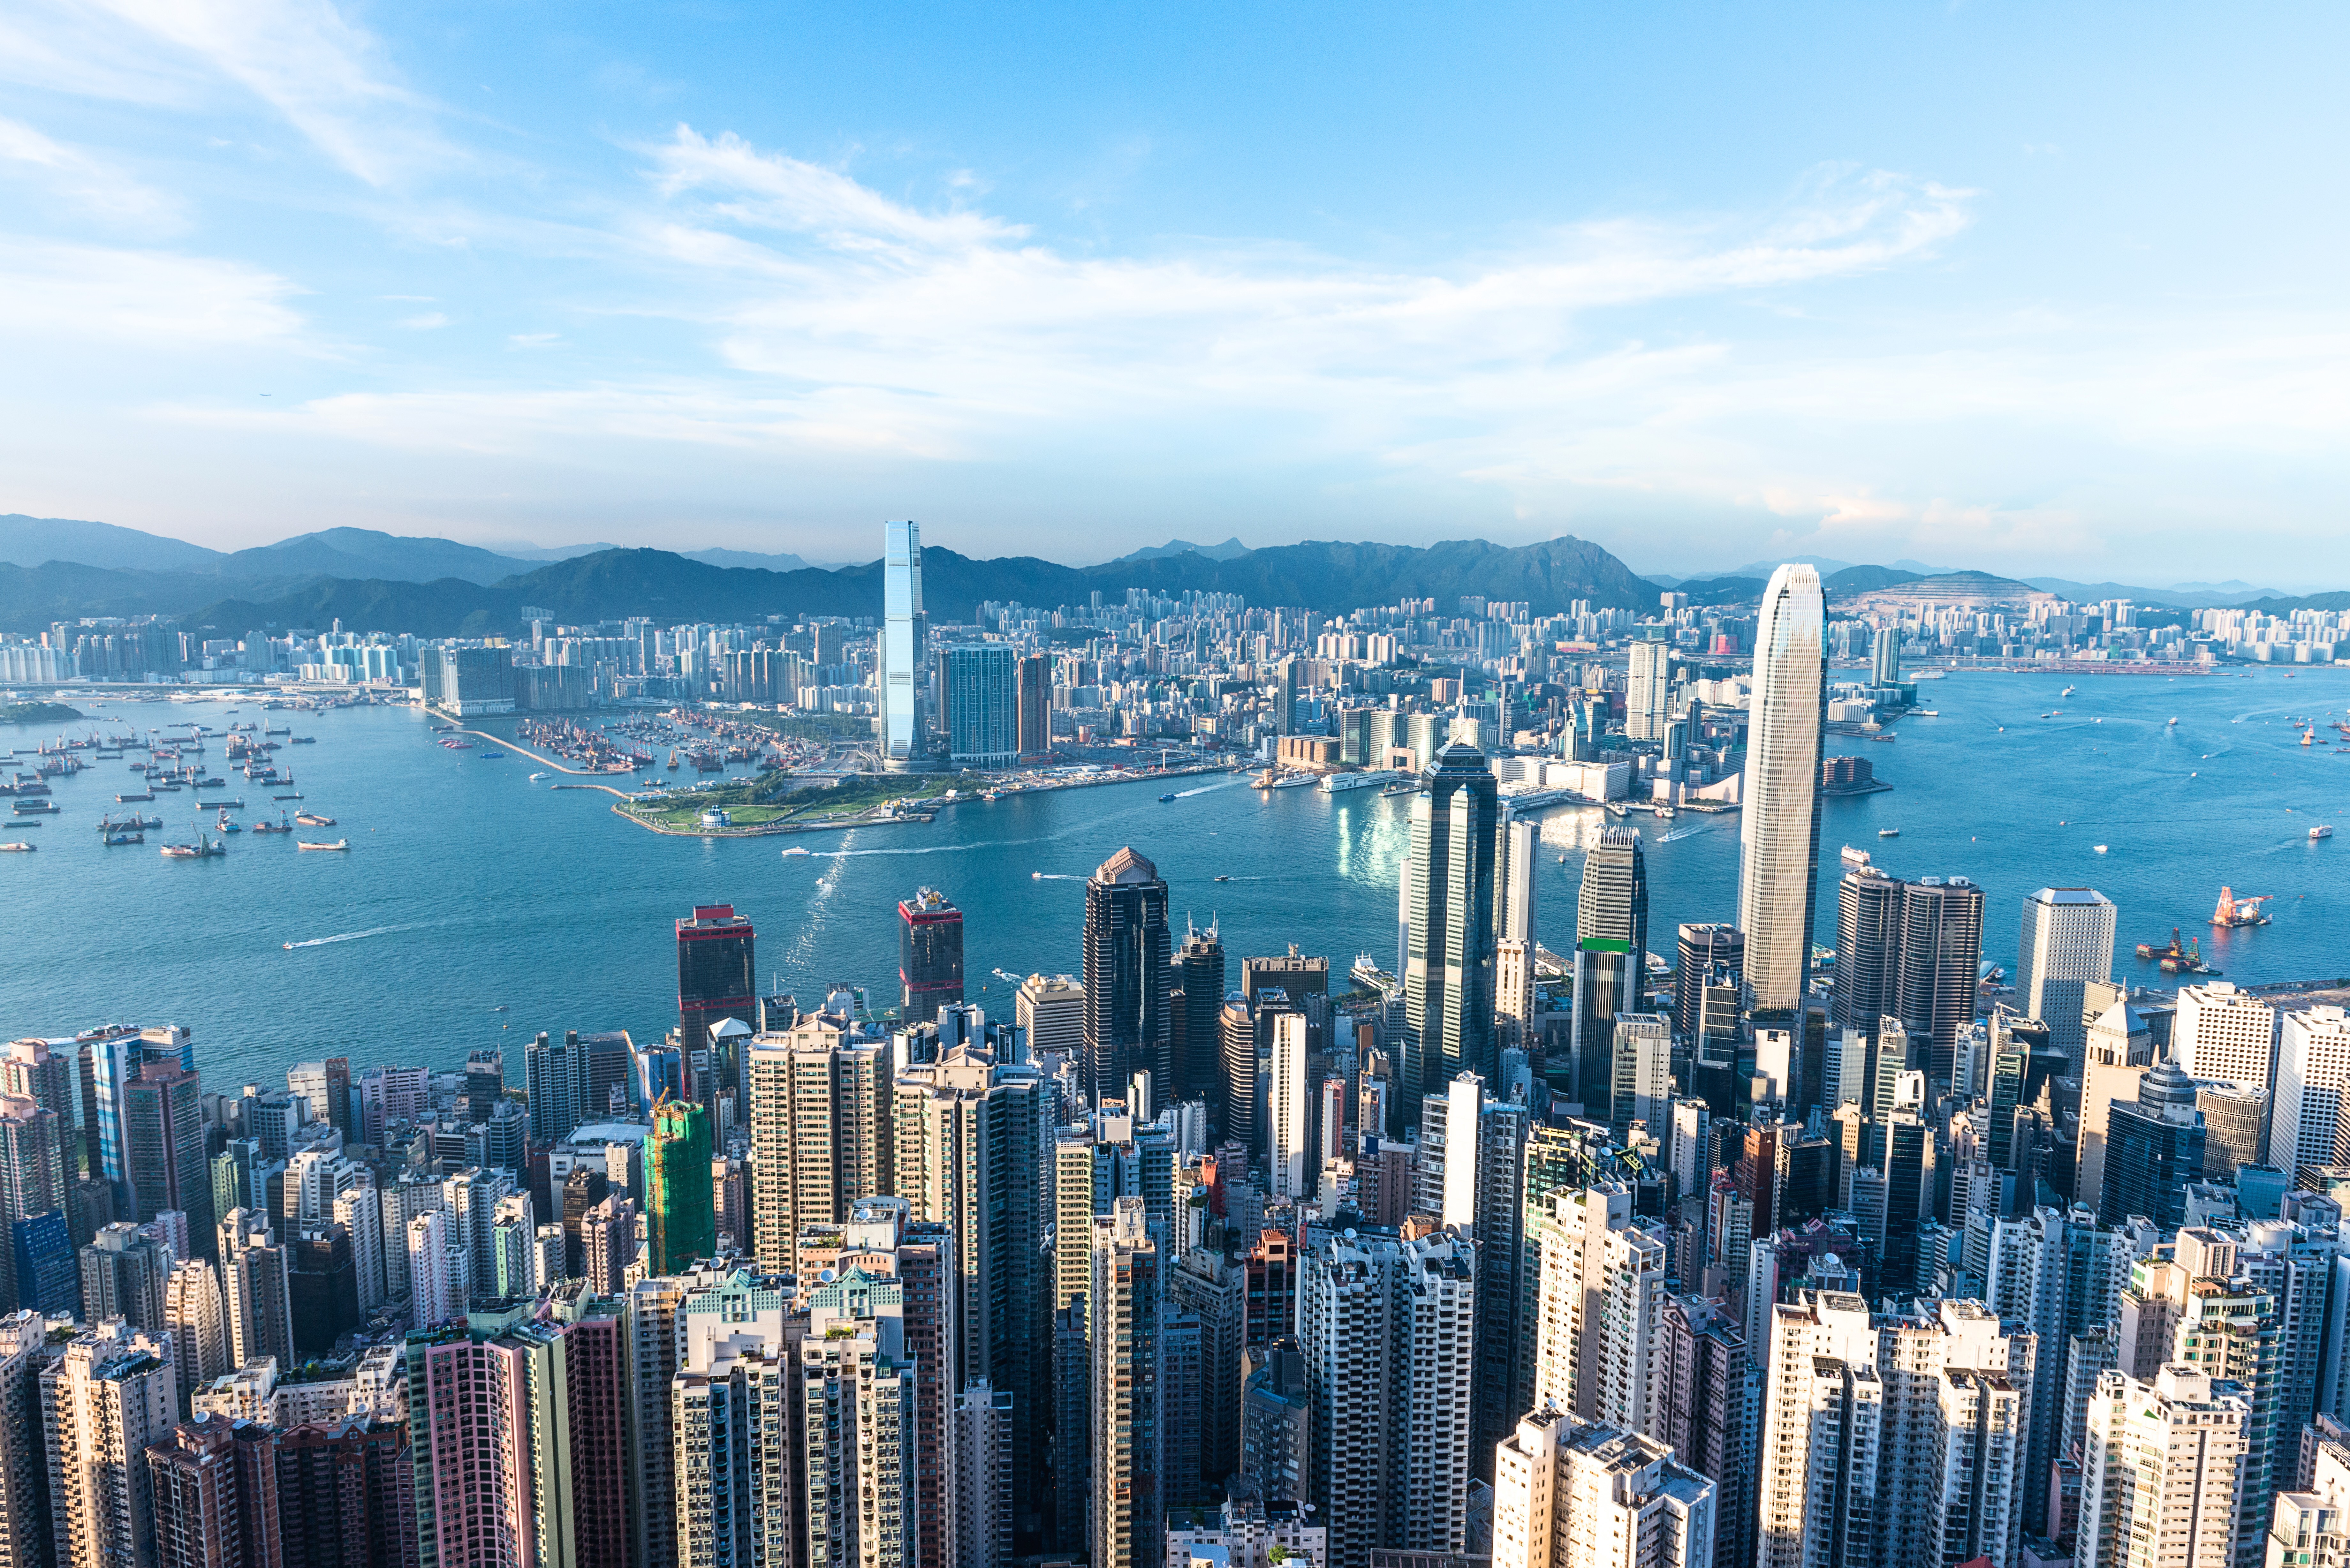 Cityscape of Hong Kong. Photo: SCMP